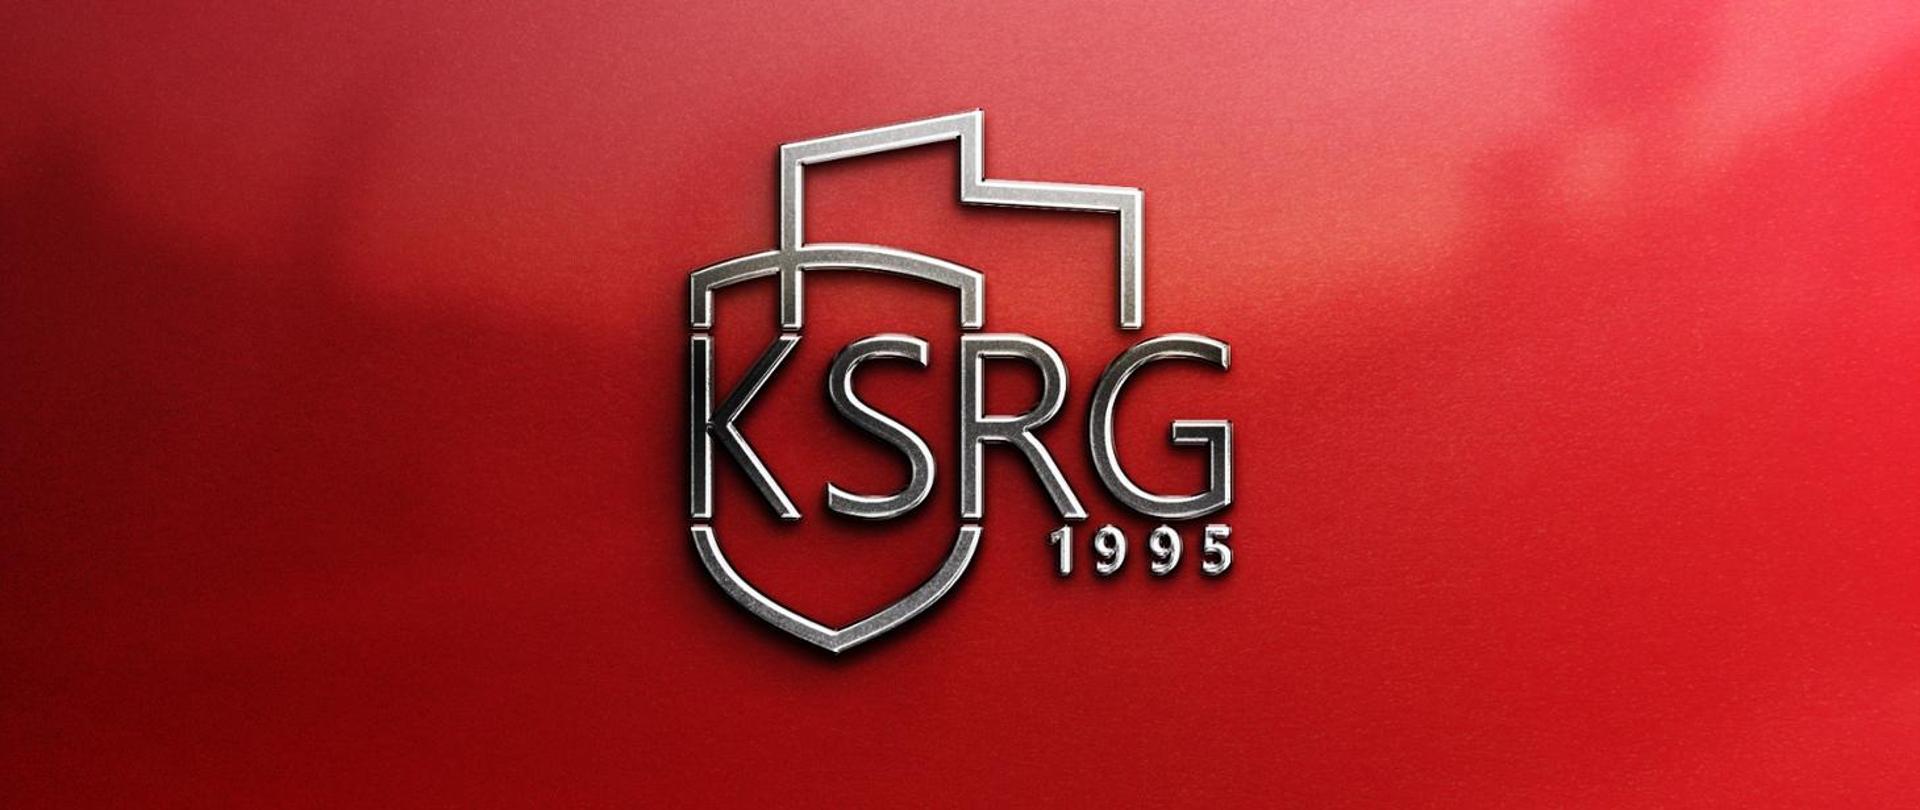 Logo to powstało przez połączenie grafik przedstawiających zarys terytorium Polski oraz tarczę. Pośrodku napis KSRG a poniżej rok powstania 1995. Całość na czerwonym tle.